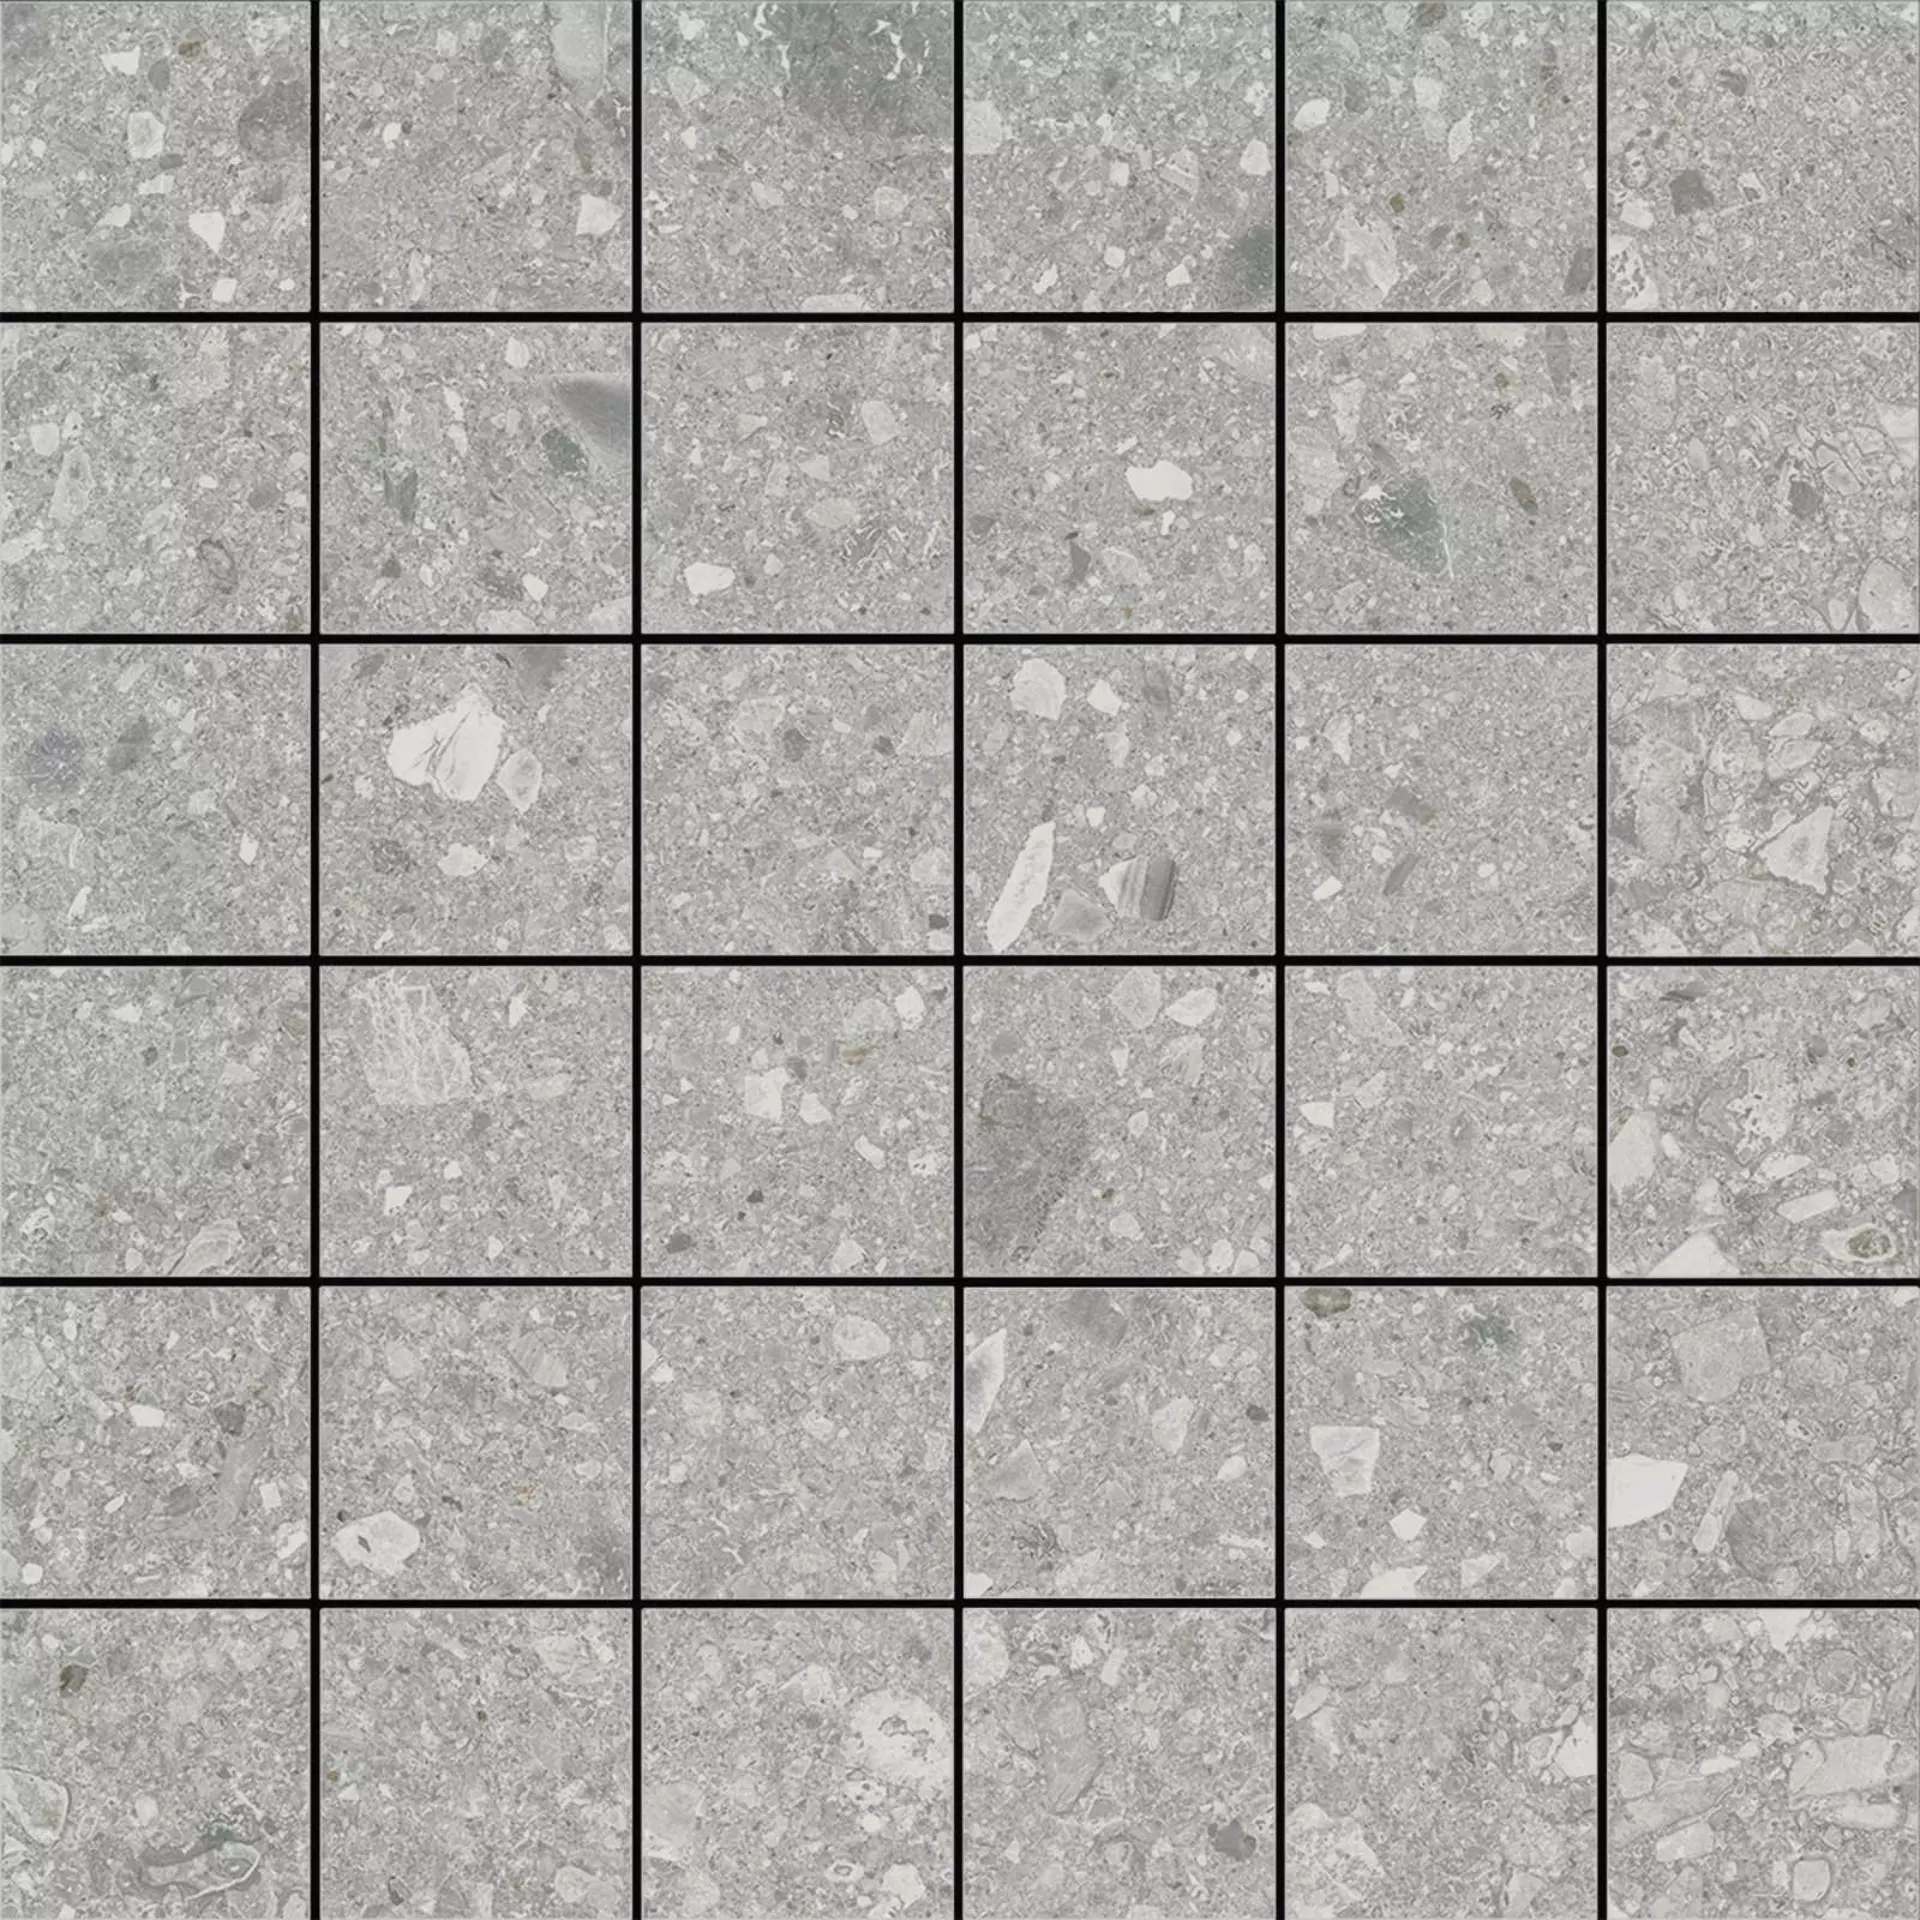 Marazzi Mystone Ceppo Di Gre Grey Naturale – Matt Mosaic 5x5 M0NN 30x30cm 10mm